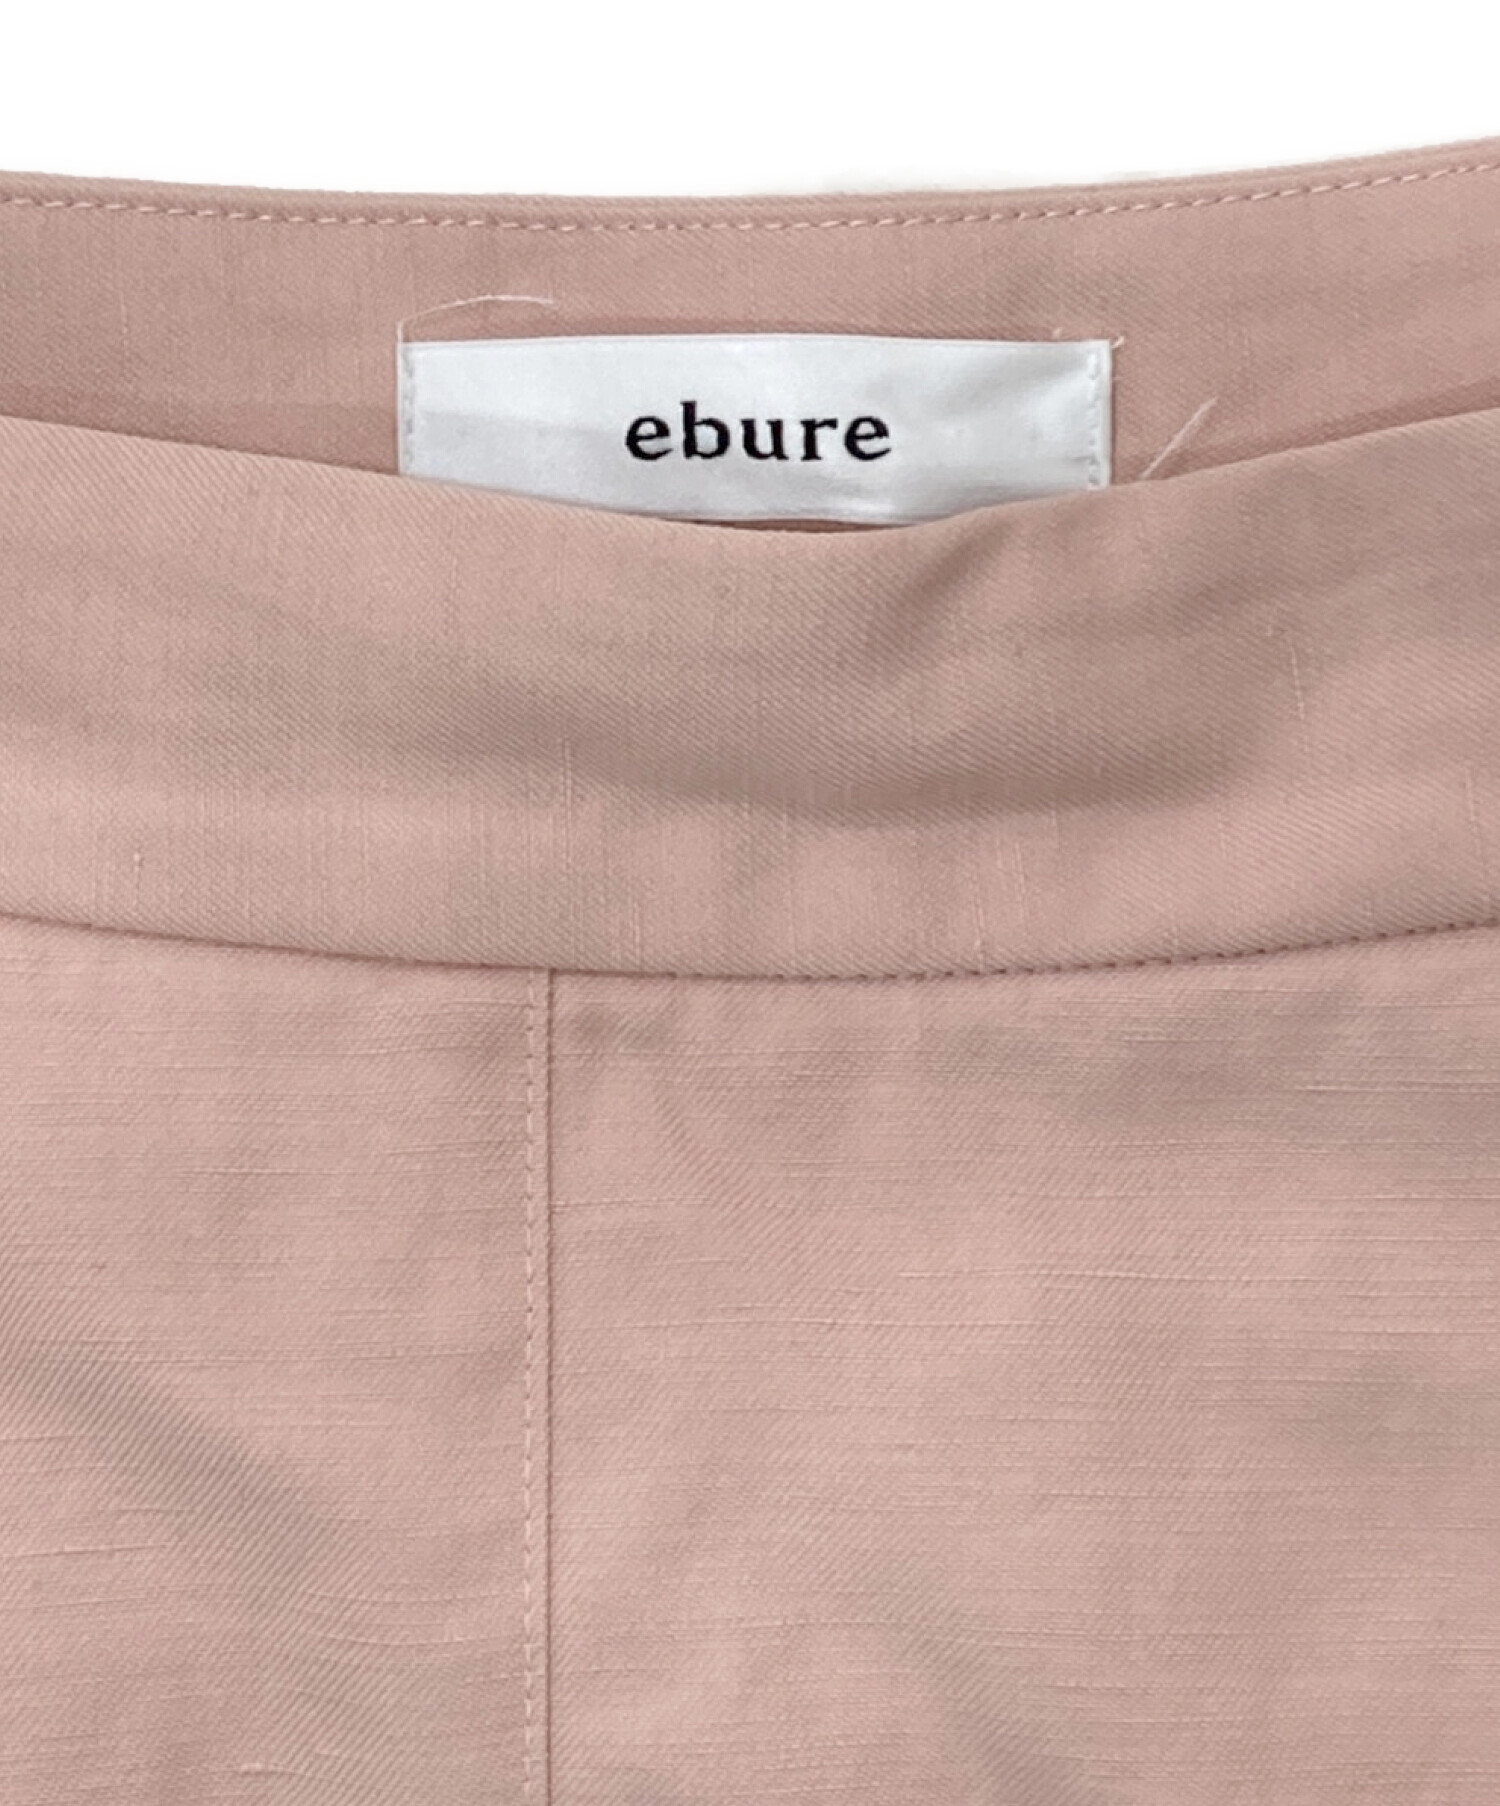 ebure (エブール) ボタニカルコットンリネンフレアスカート ピンク サイズ:36